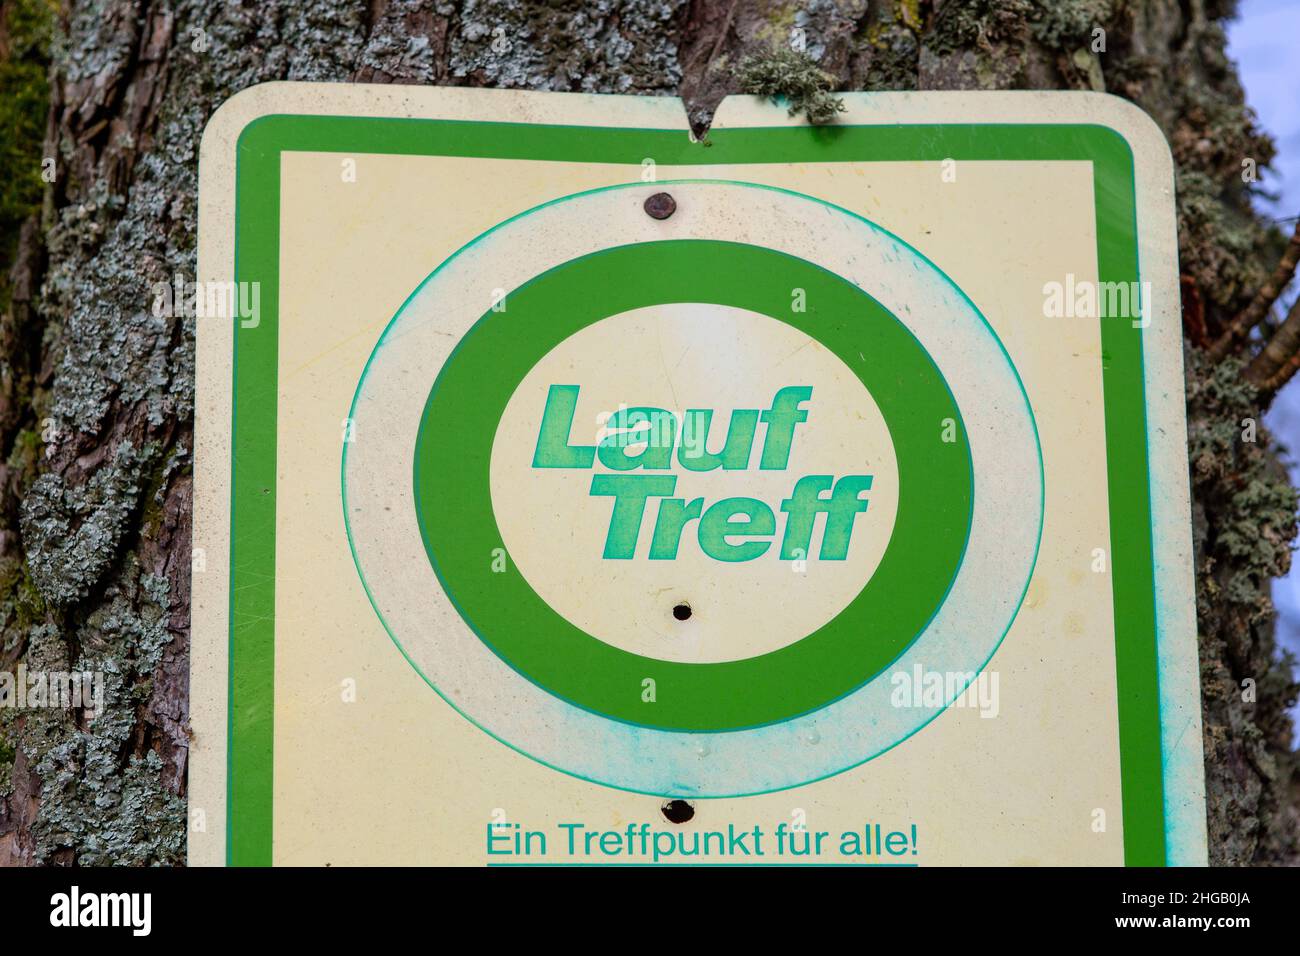 Le signe avec le texte allemand 'Lauftreff' traduit en anglais 'point de rendez-vous pour les coureurs.Un point de rencontre pour tous » Banque D'Images